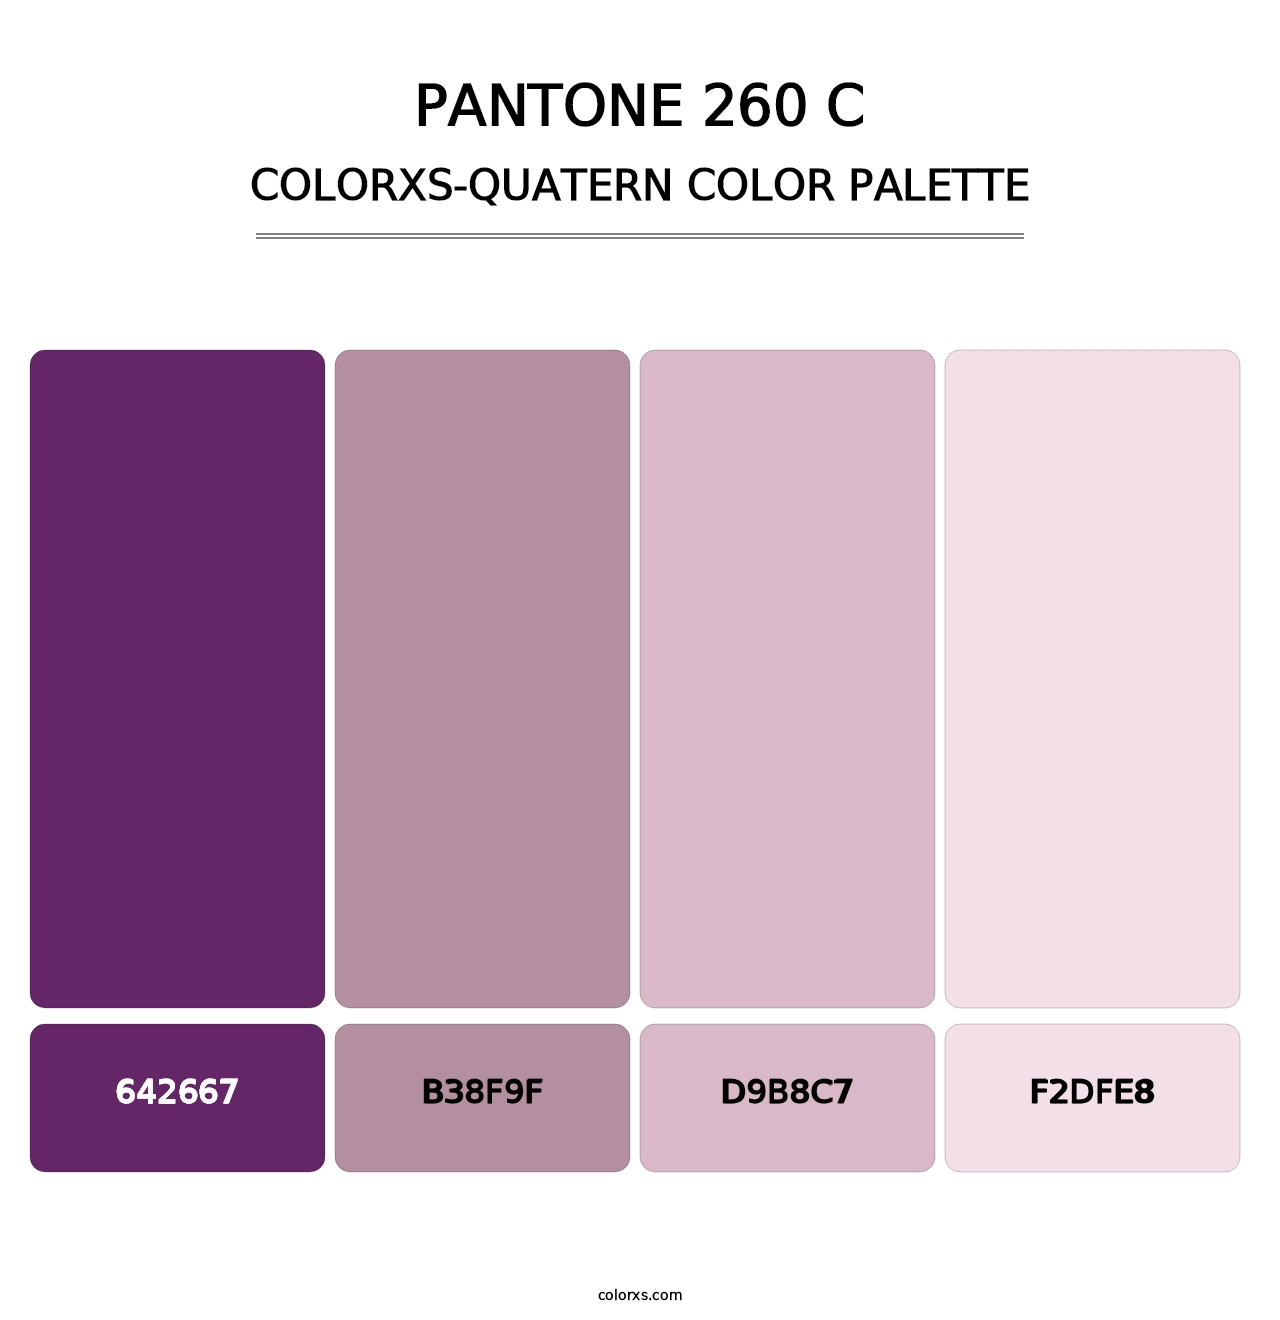 PANTONE 260 C - Colorxs Quatern Palette